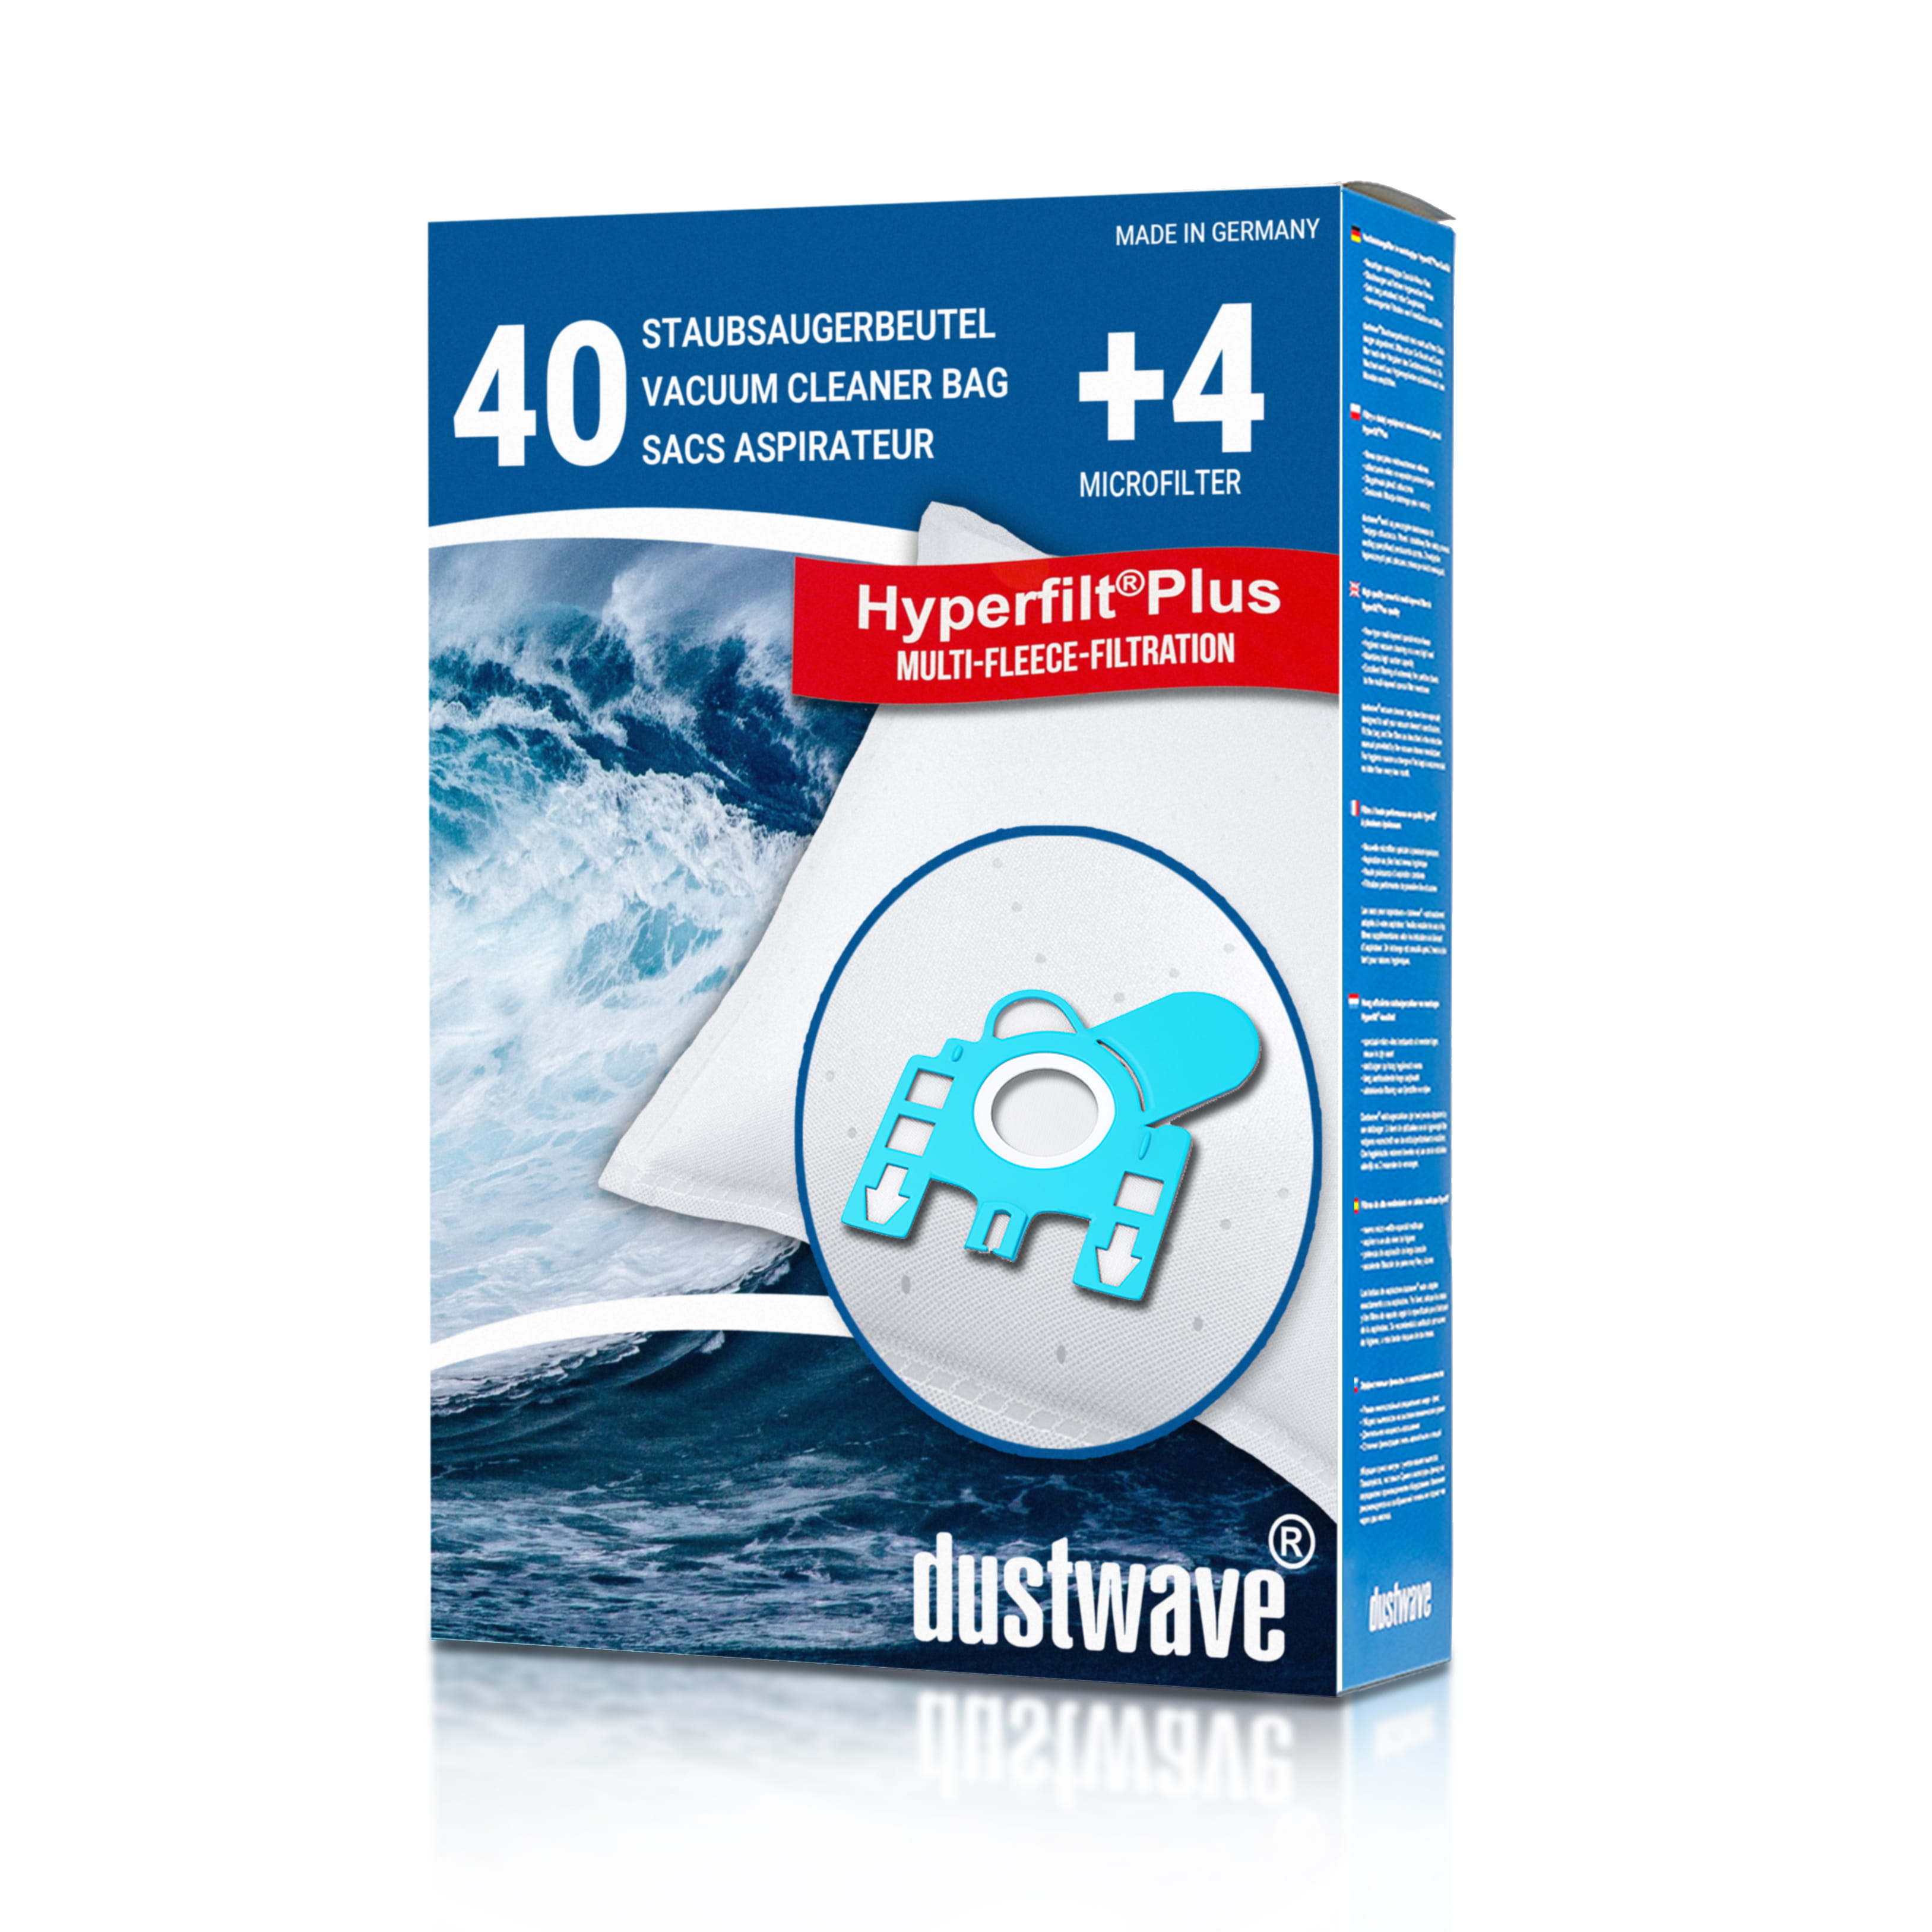 Dustwave® 40 Staubsaugerbeutel für Hoover 39000417 - hocheffizient, mehrlagiges Mikrovlies mit Hygieneverschluss - Made in Germany